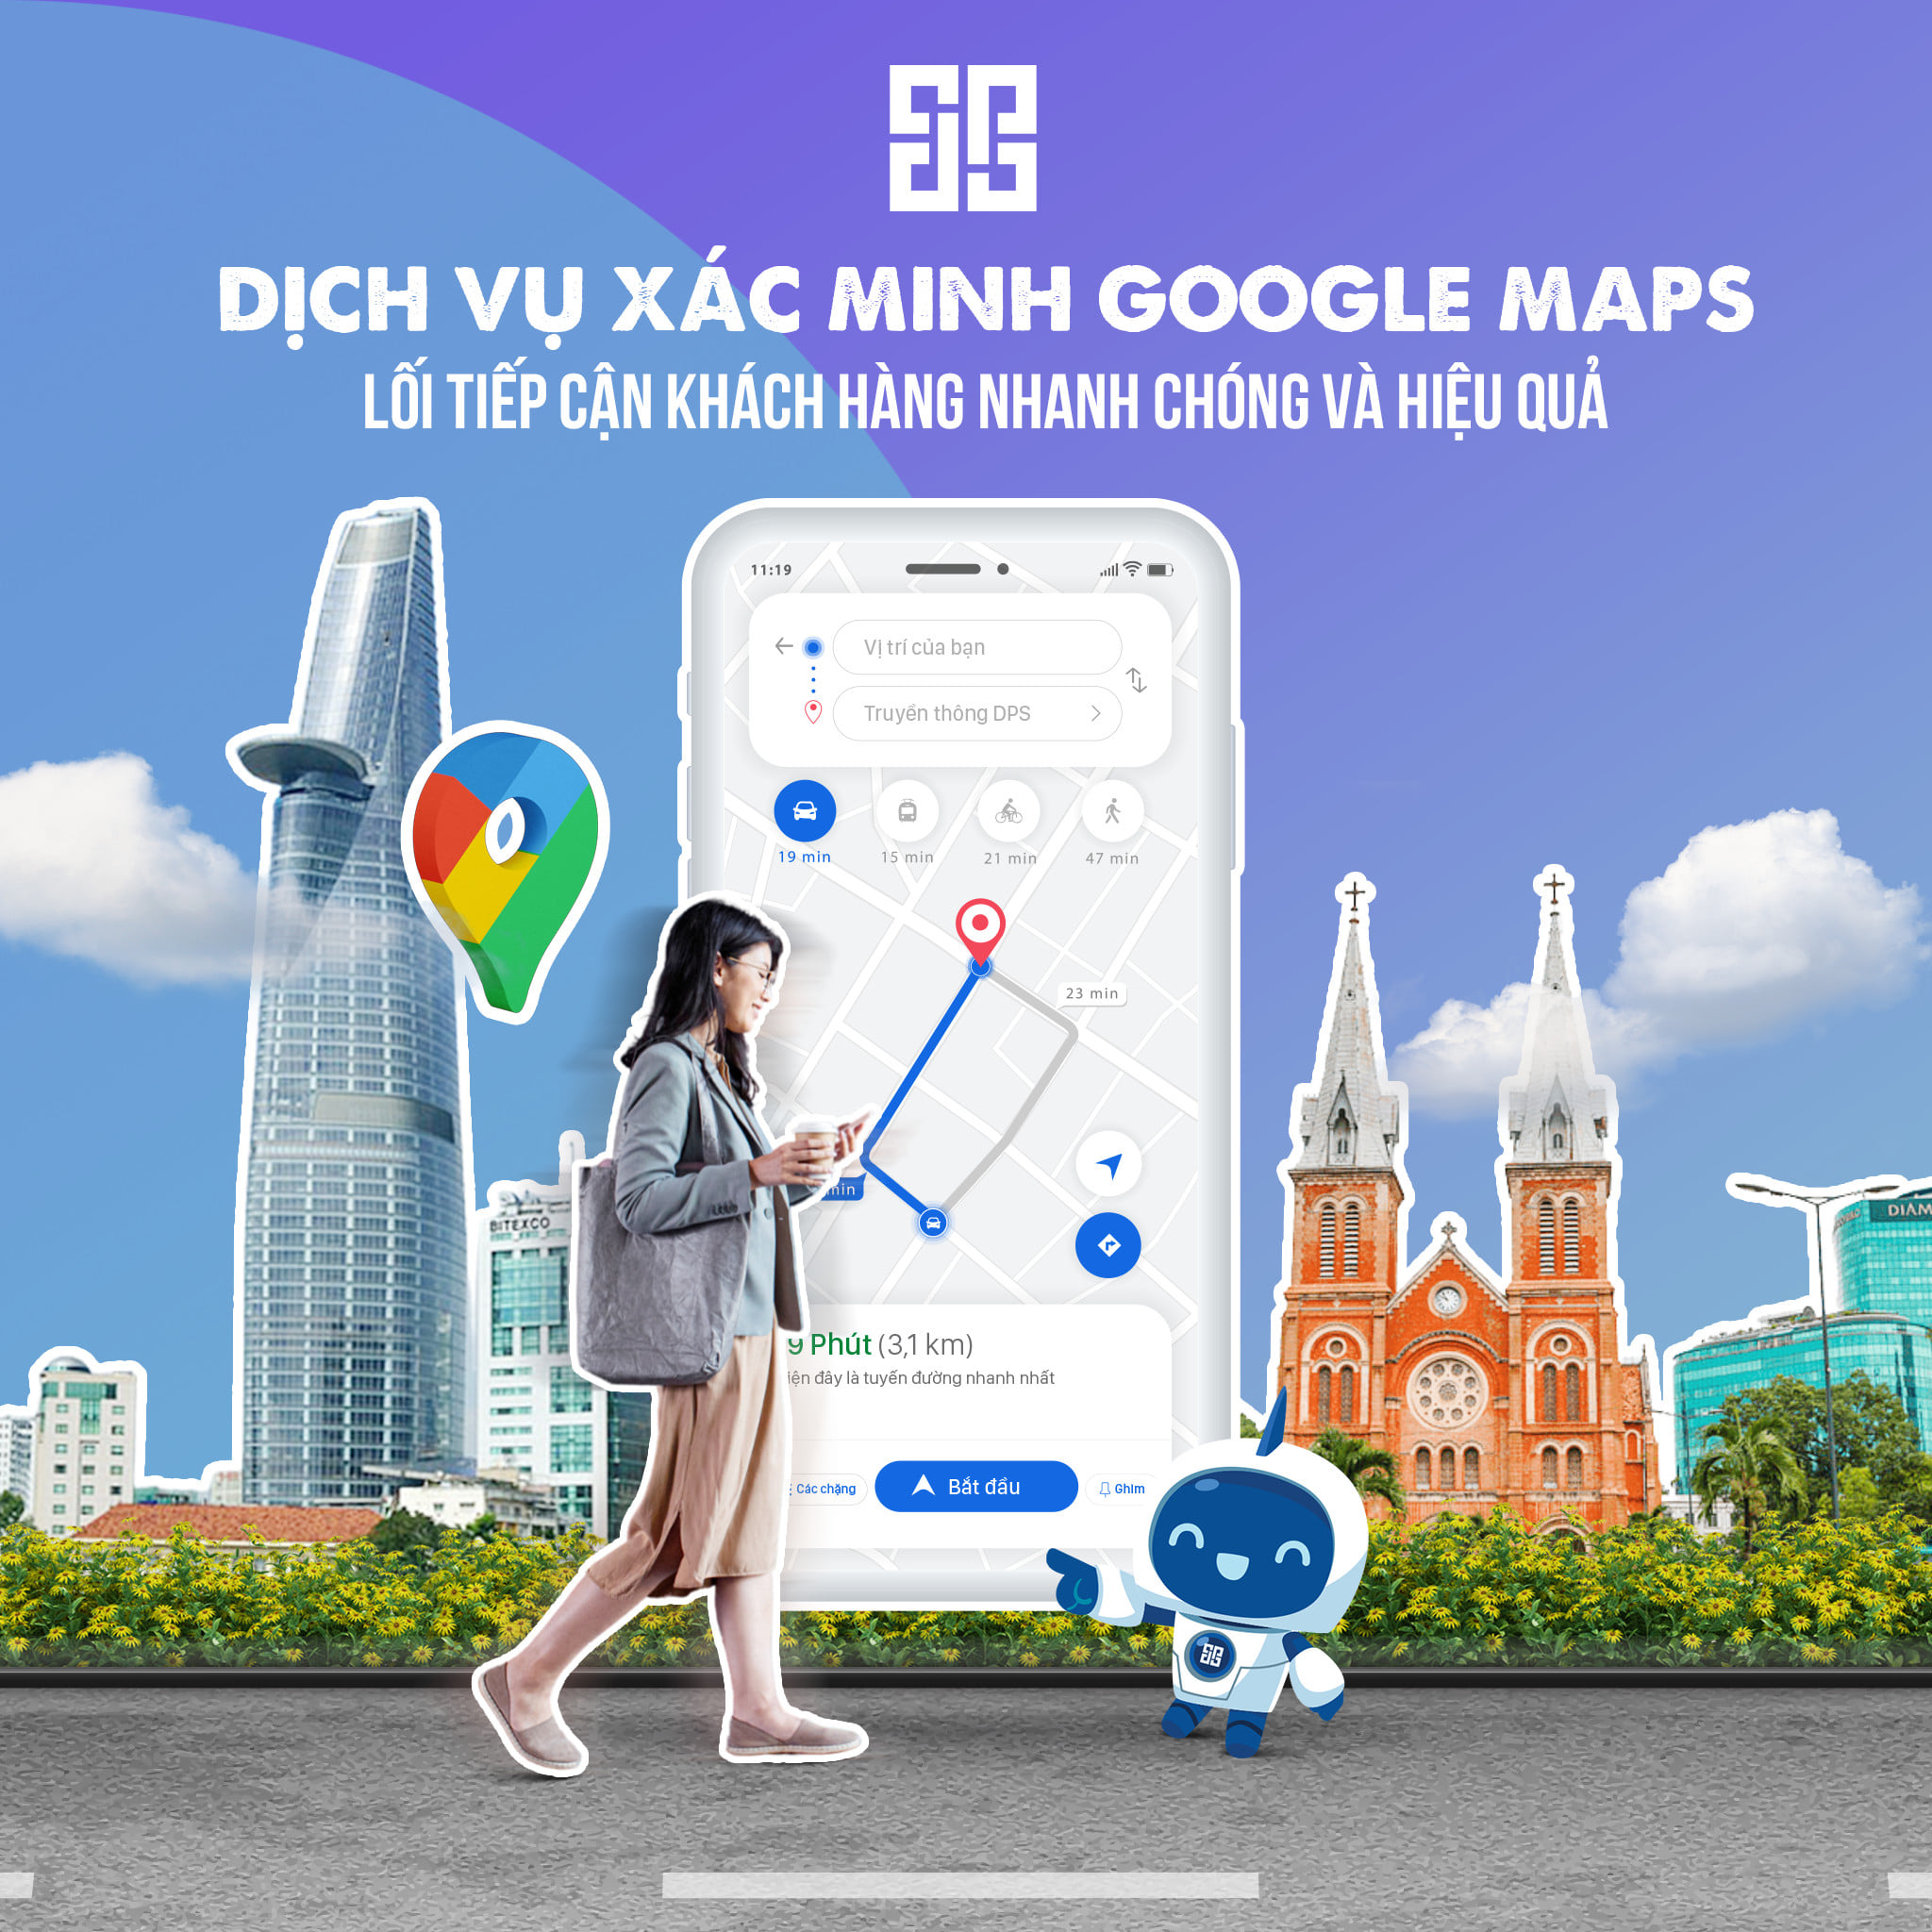 Dịch Vụ Xác Minh Doanh Nghiệp Google Maps DPS Giá Rẻ 2021